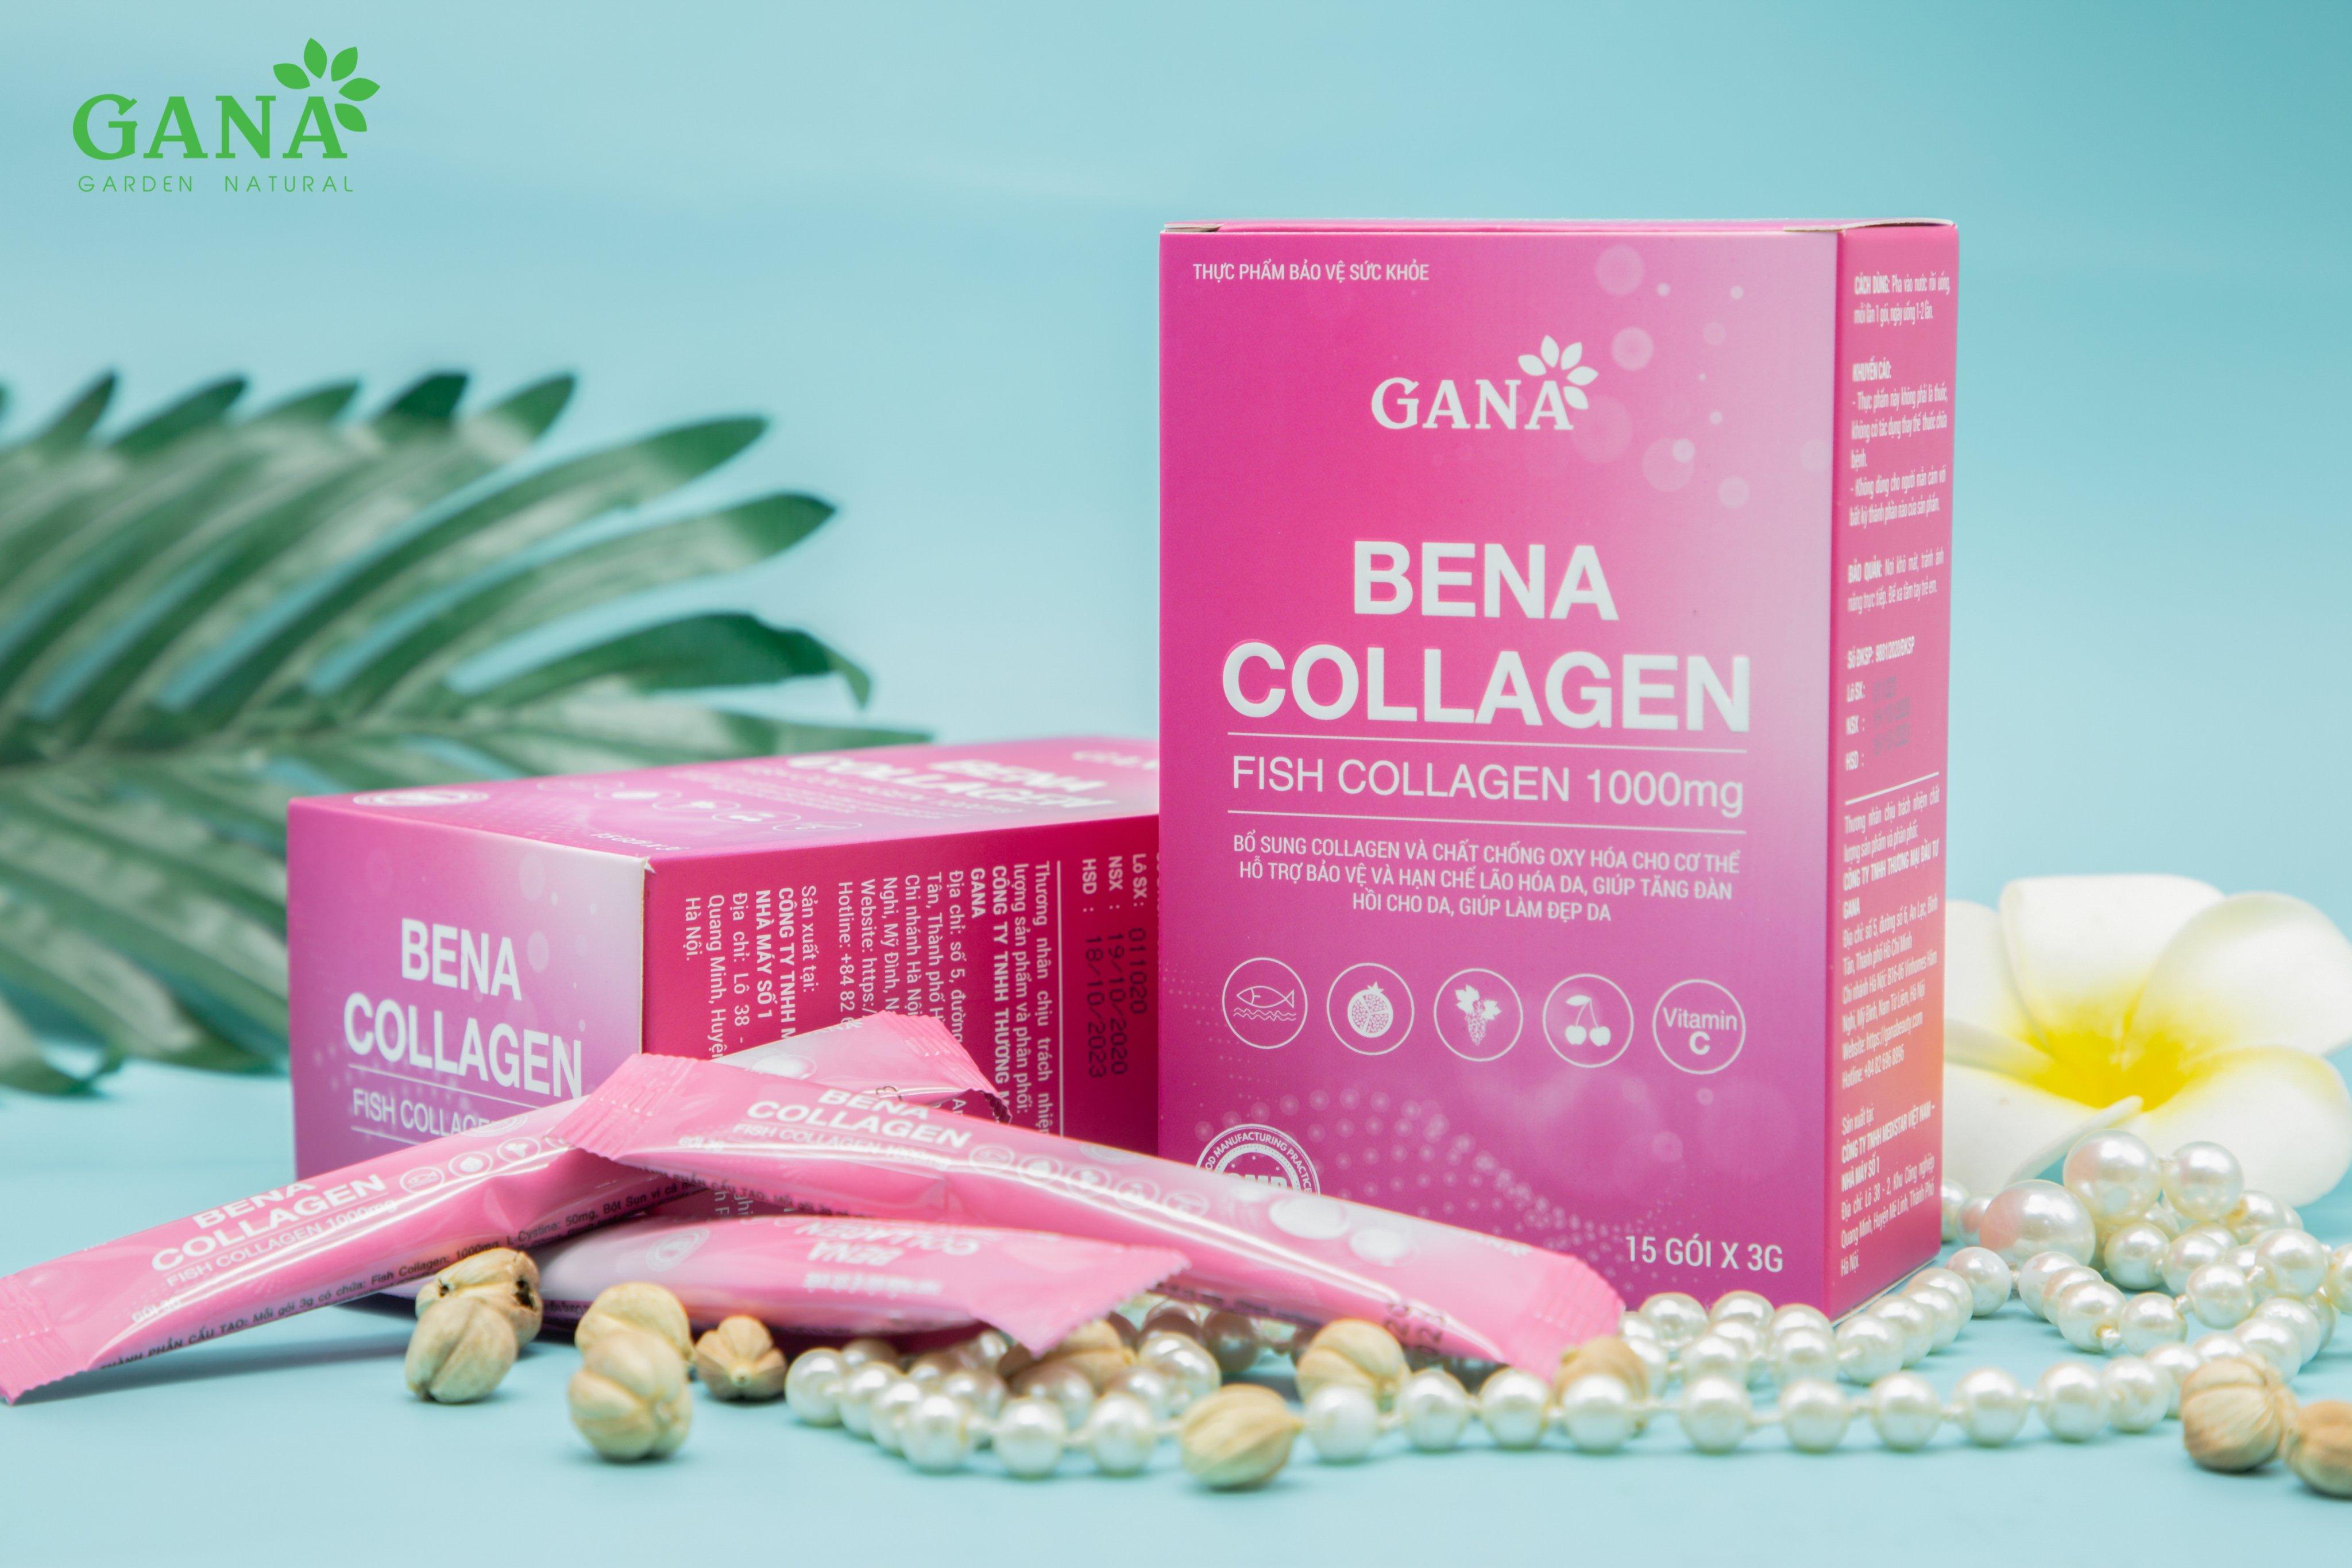 Bena Collagen giúp bảo vệ và hỗ trợ hạn chế lão hóa da như thế nào?
